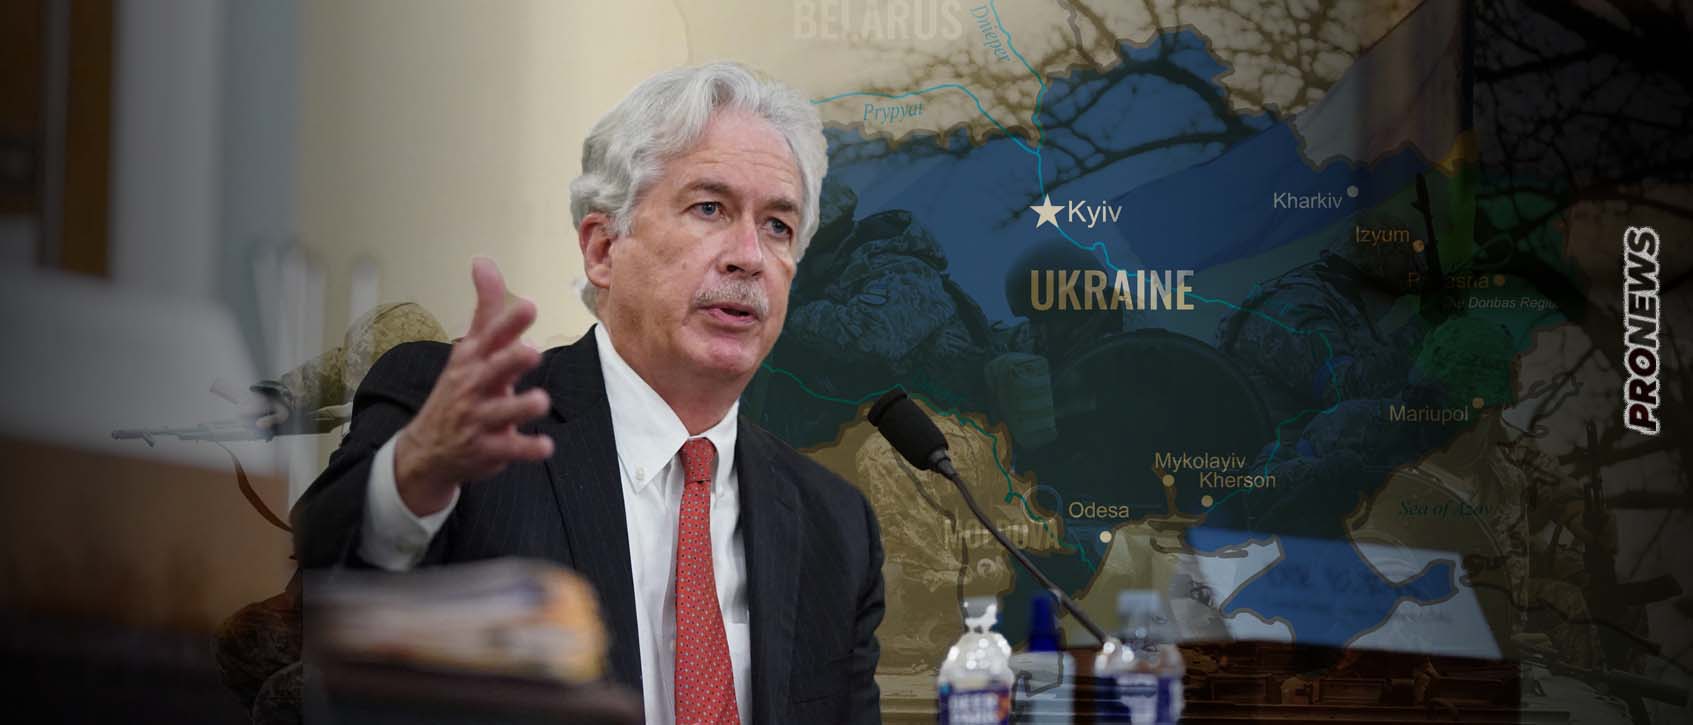 Διευθυντής CIA Μπιλ Μπερνς: «Η Ουκρανία χωρίς την βοήθεια των ΗΠΑ θα χάσει τον πόλεμο με την Ρωσία έως το τέλος του 2024»